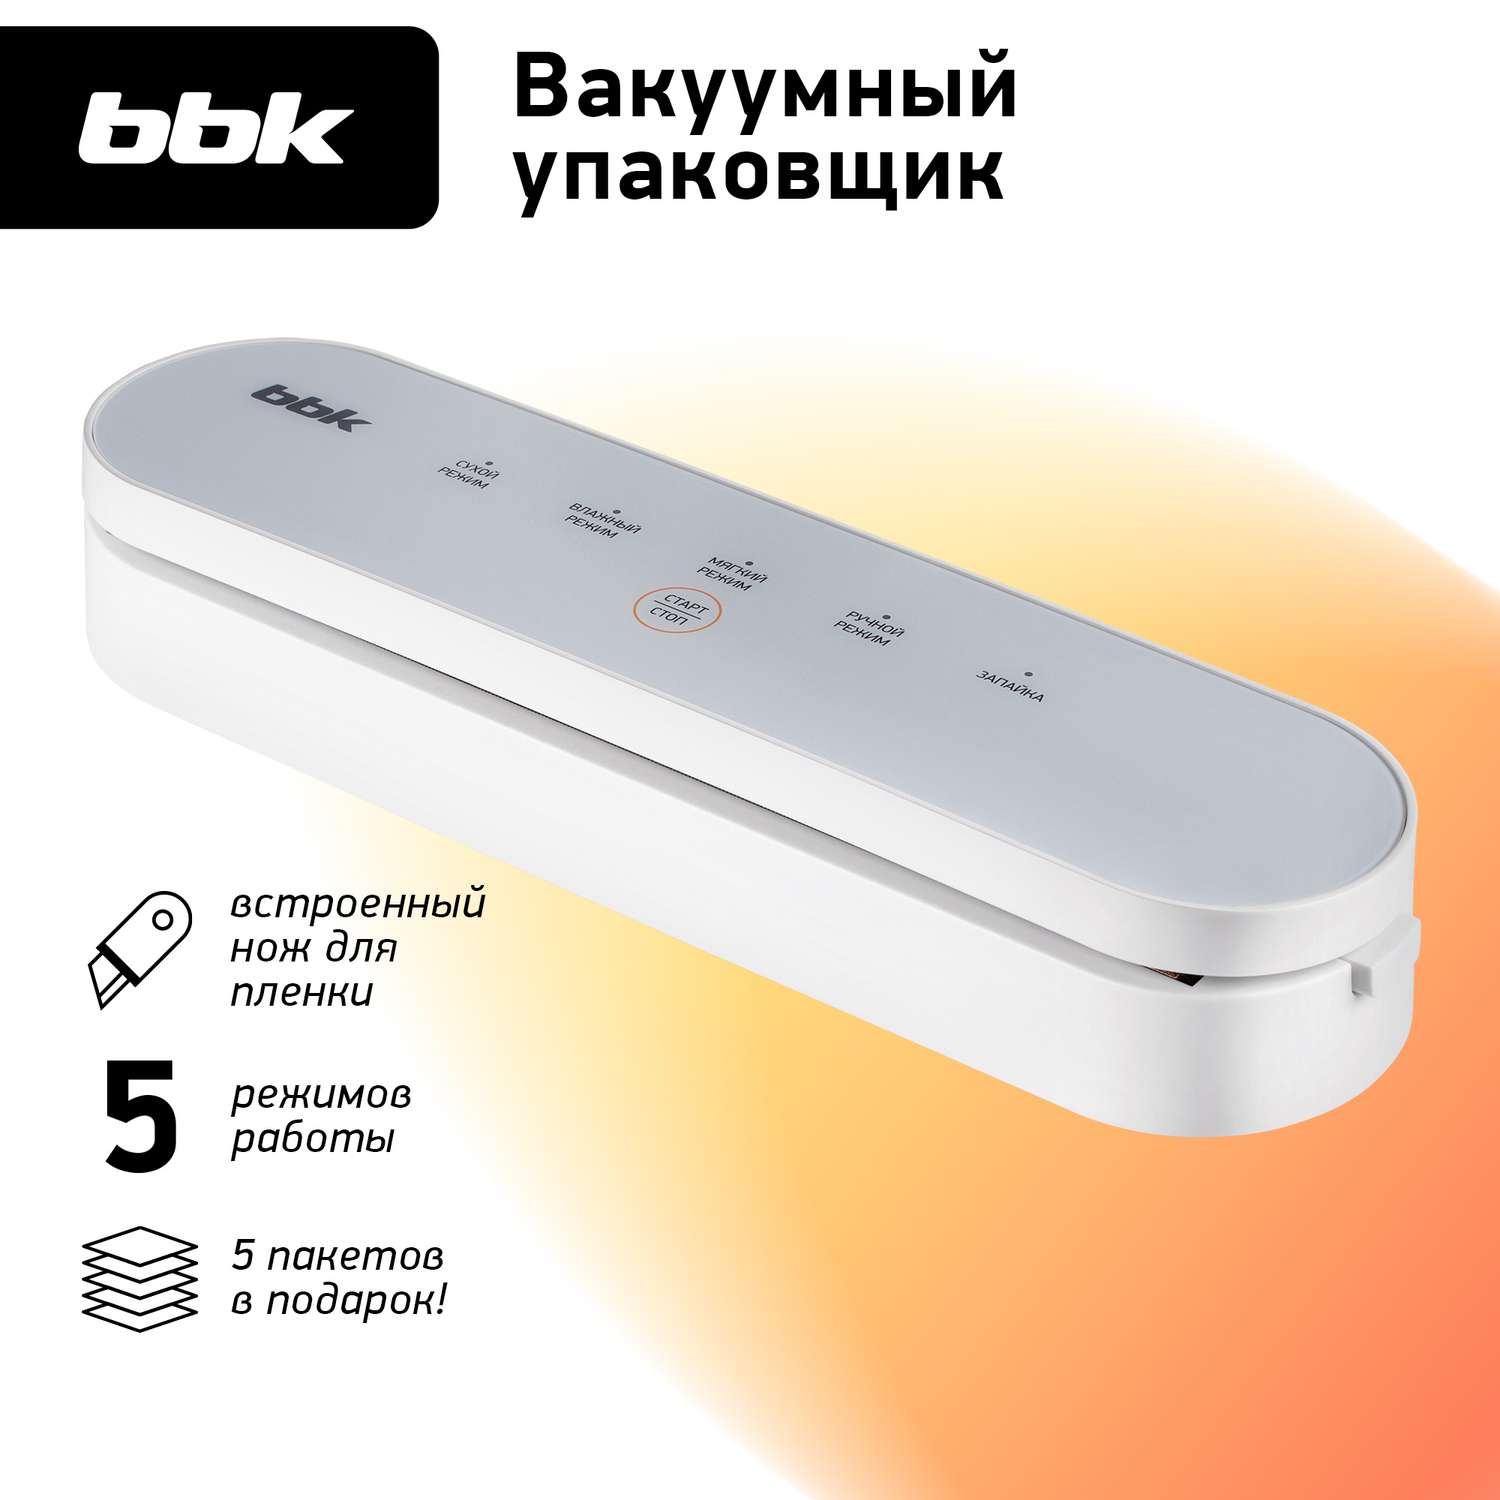 Вакуумный упаковщик BBK BVS602 мощность 90 Вт сенсорное управление белый цвет - фото 1